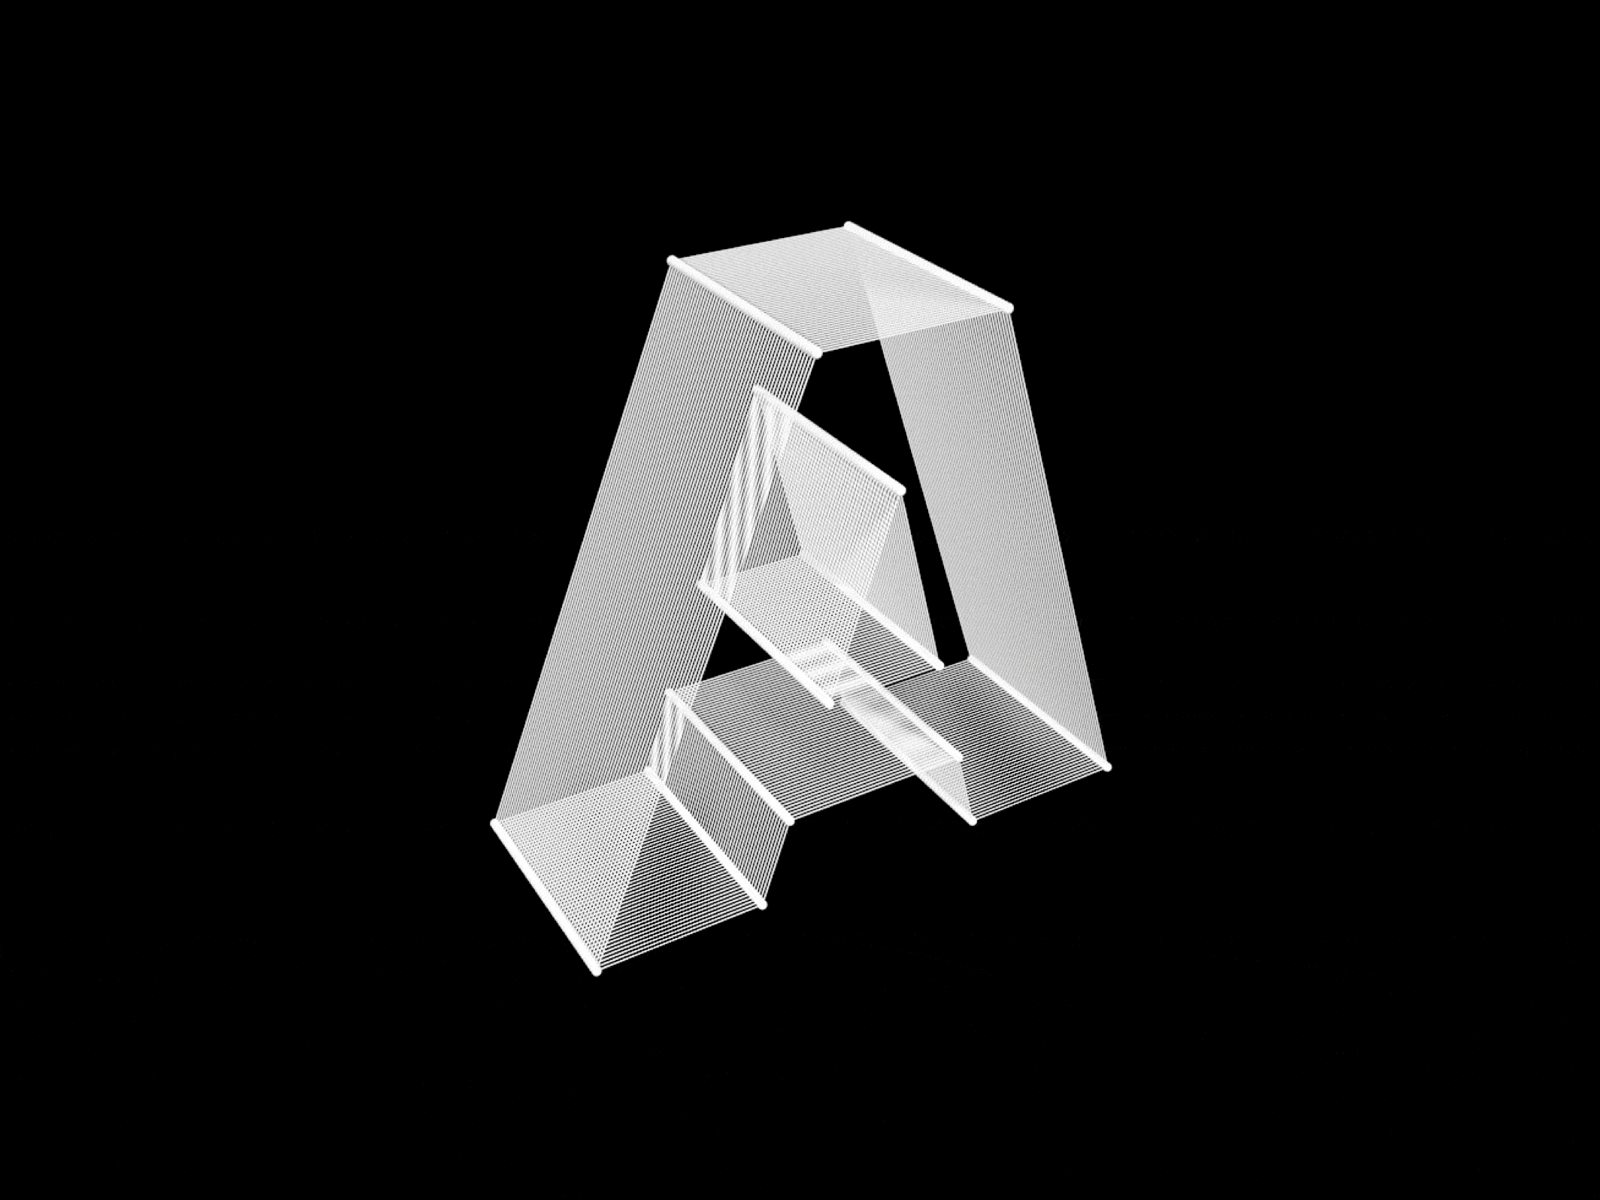 3D Letters 3d 3d animation 3d letters cinema4d design minimal type typography